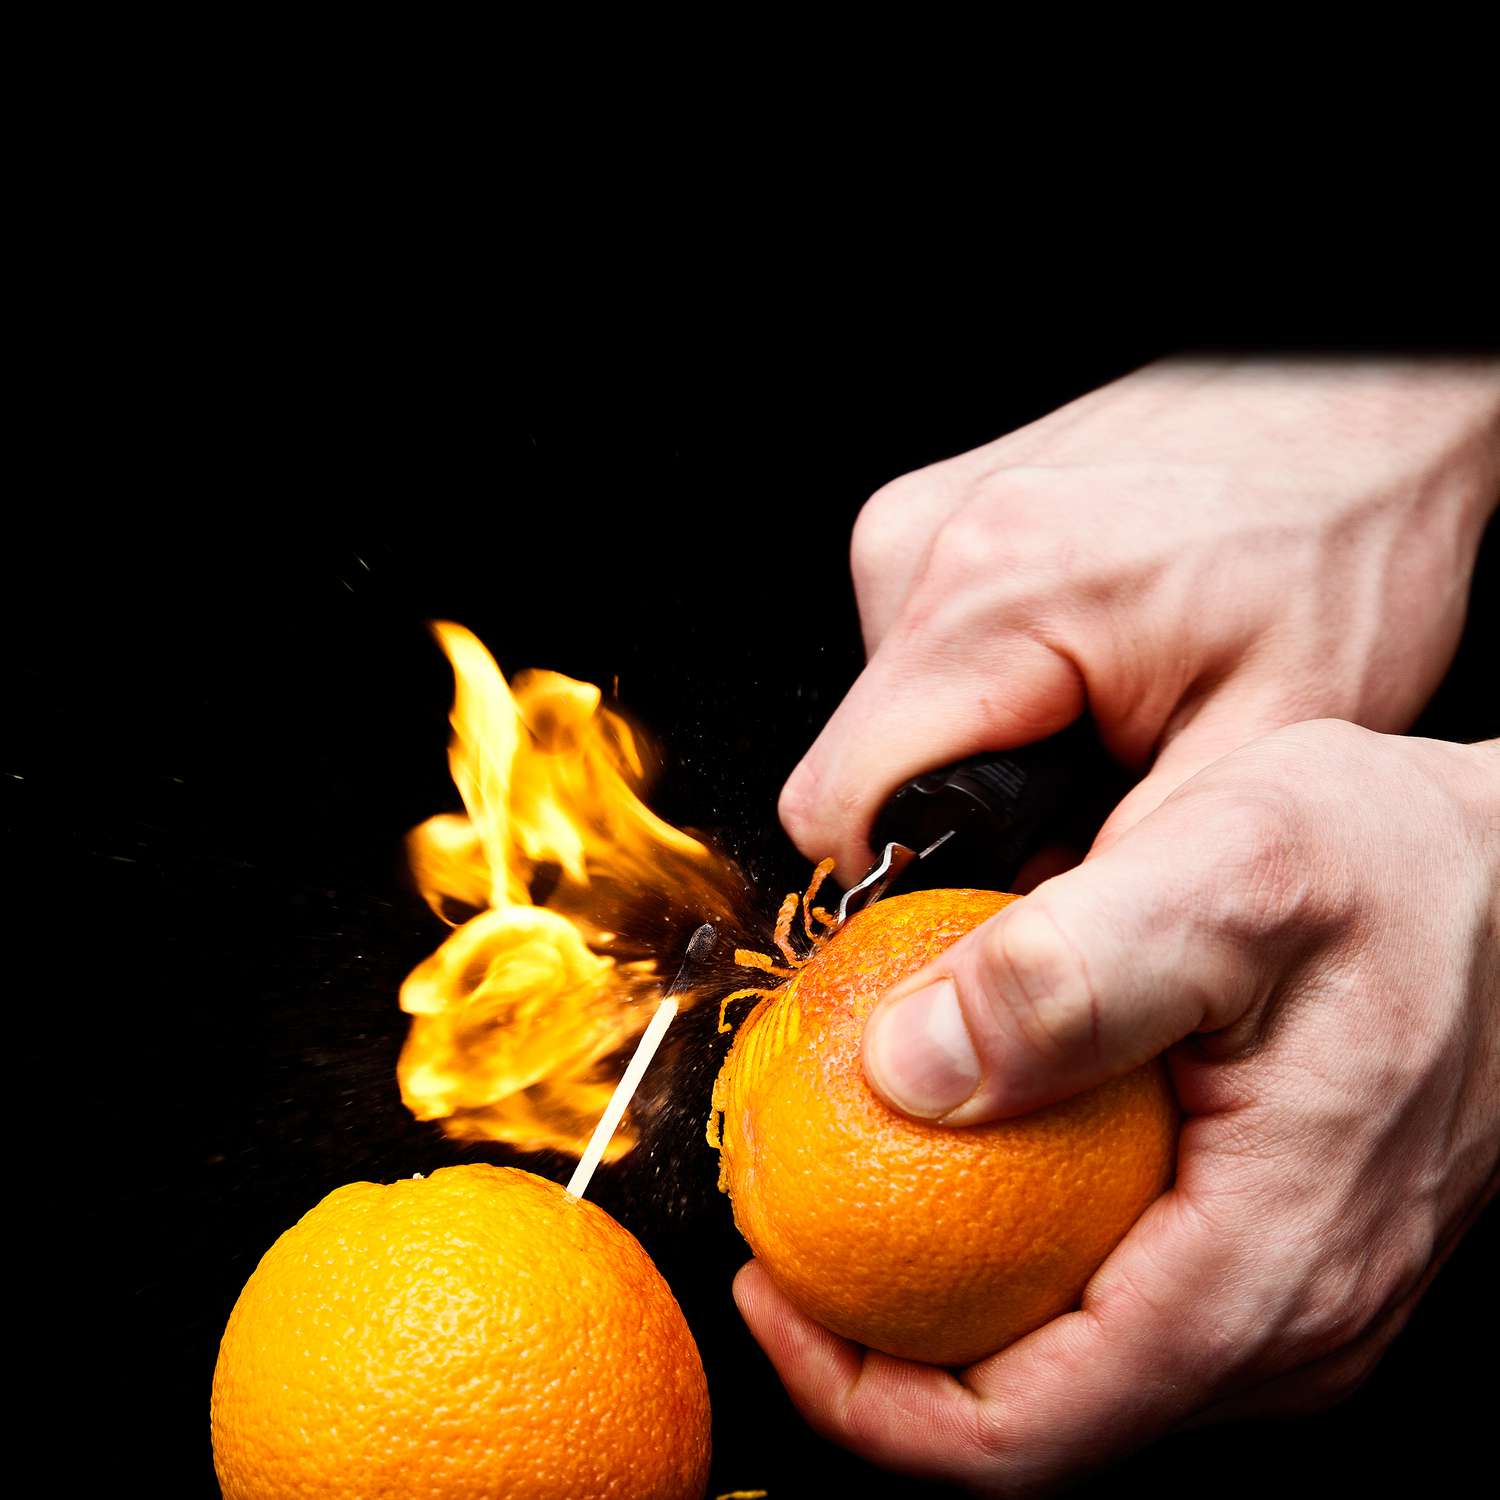 orange-oil-aflame-modernist-cuisine-s111076.jpg